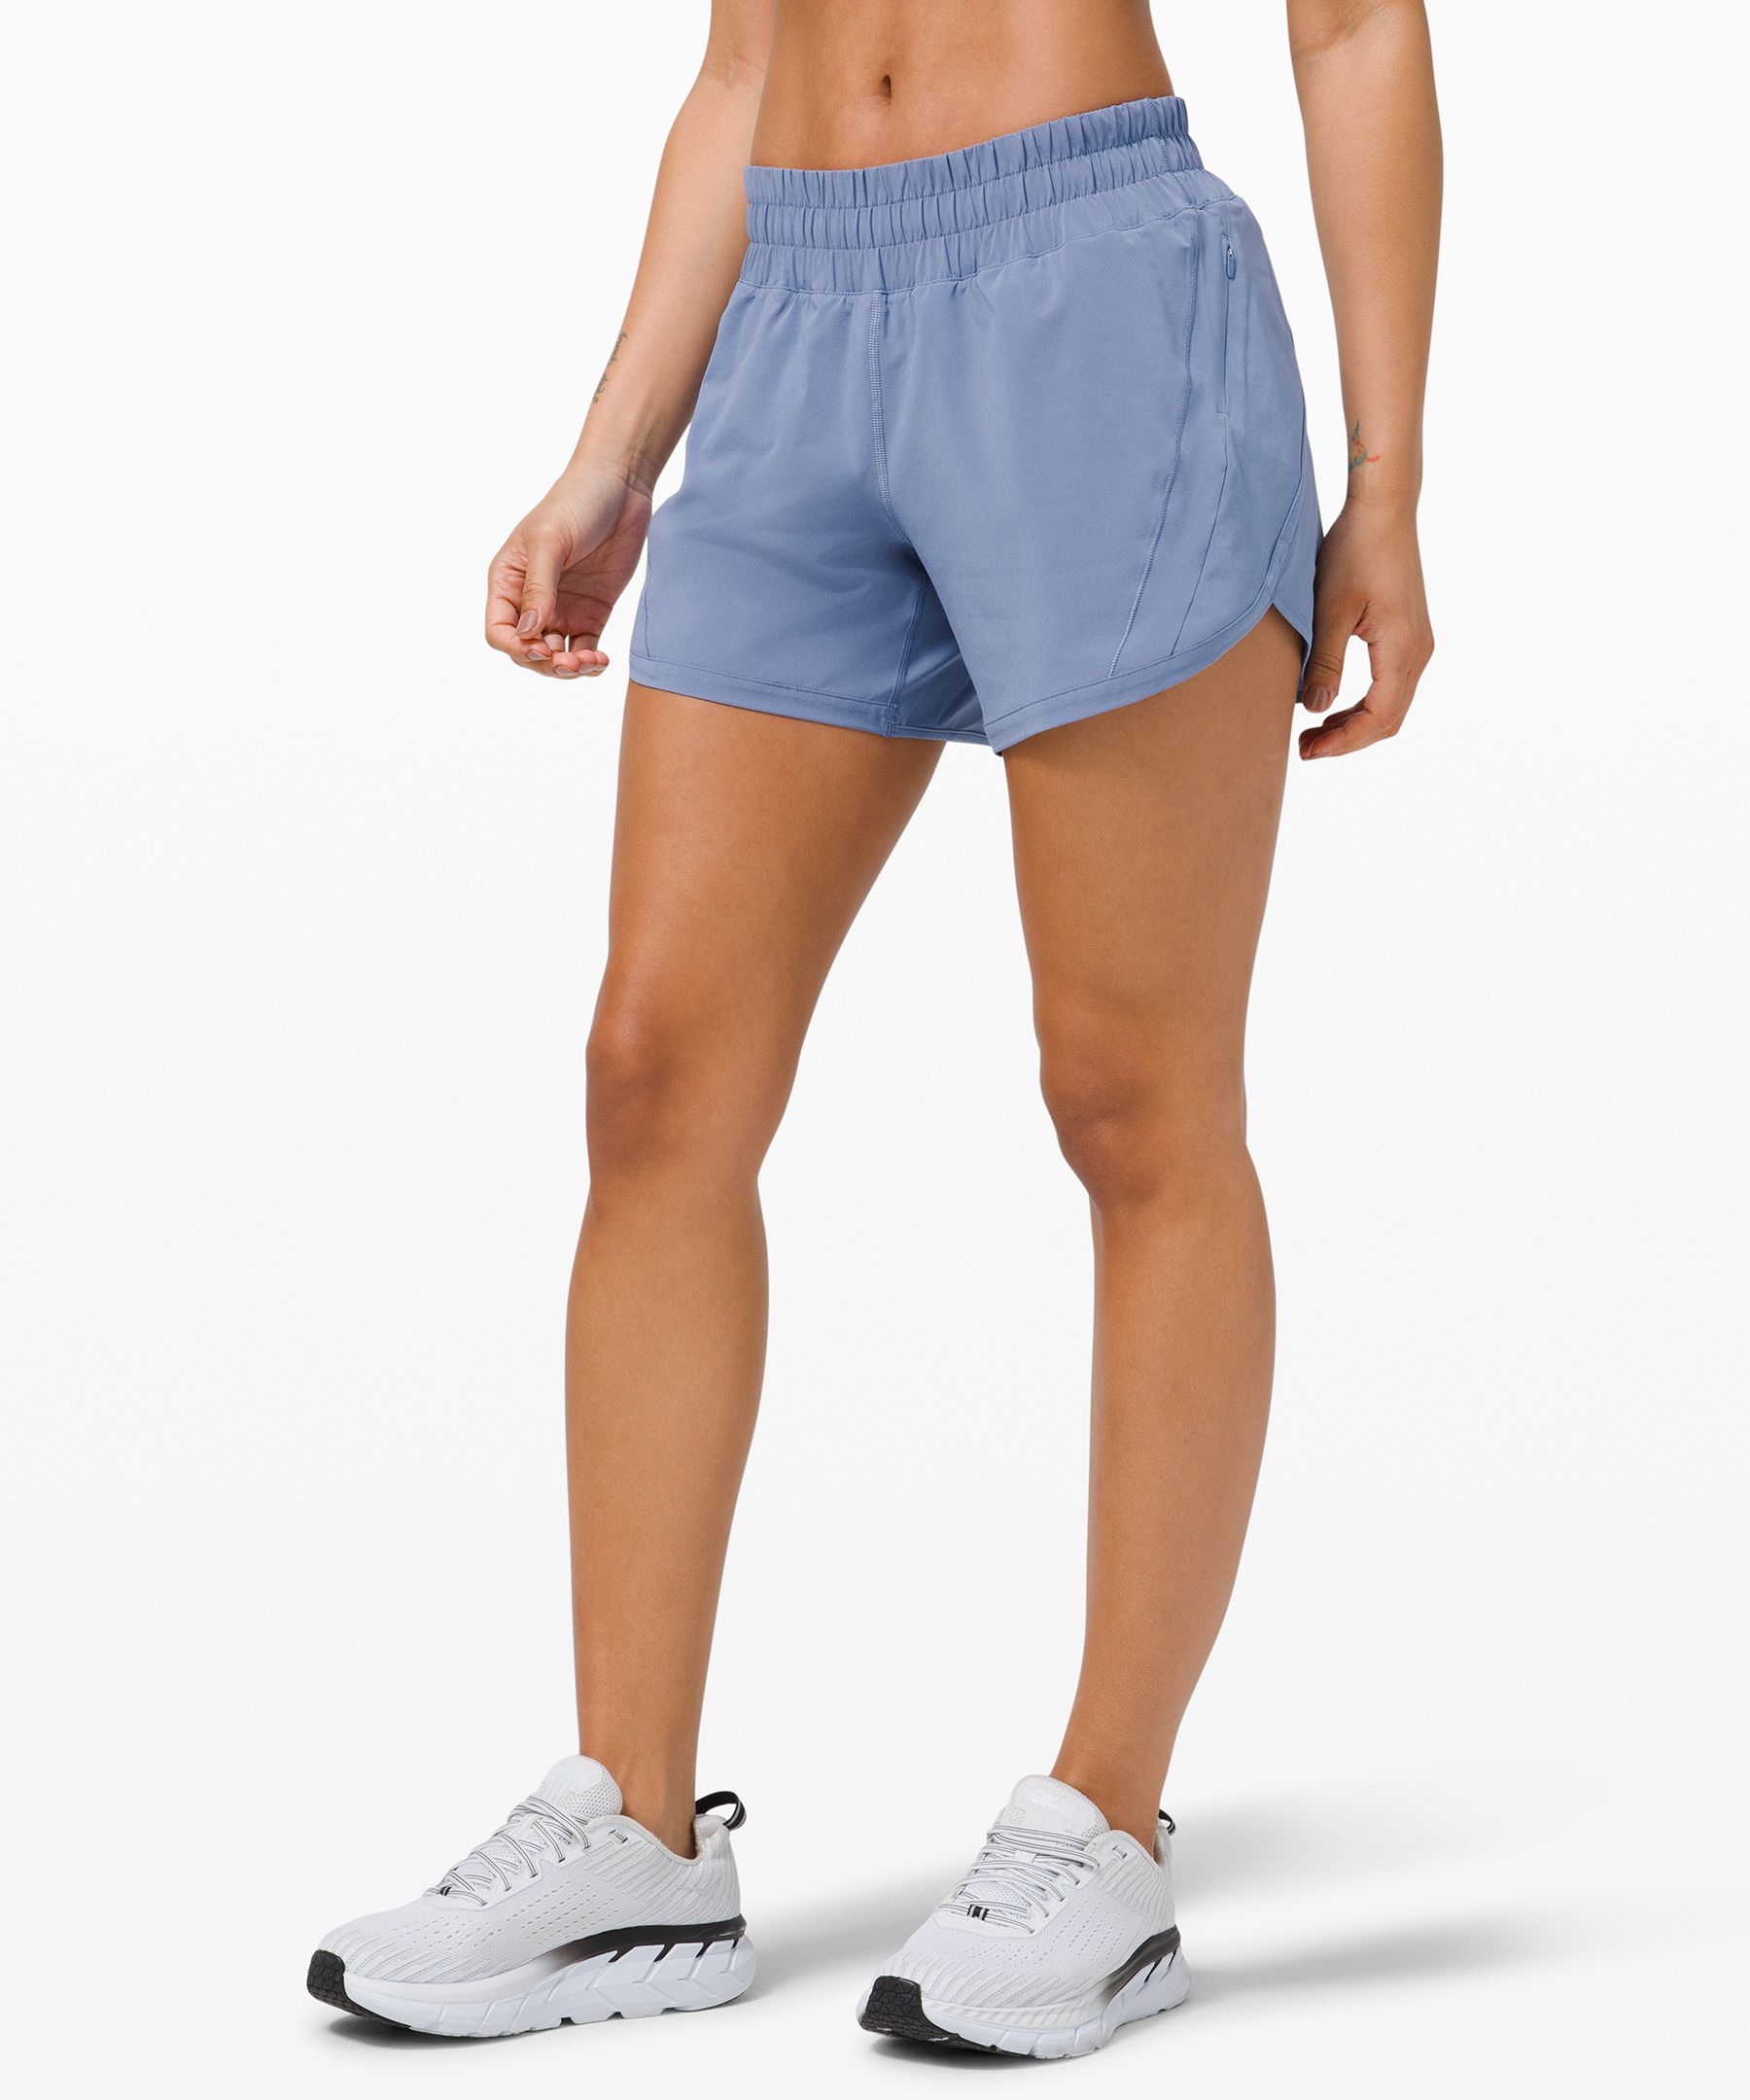 lululemon shorts women